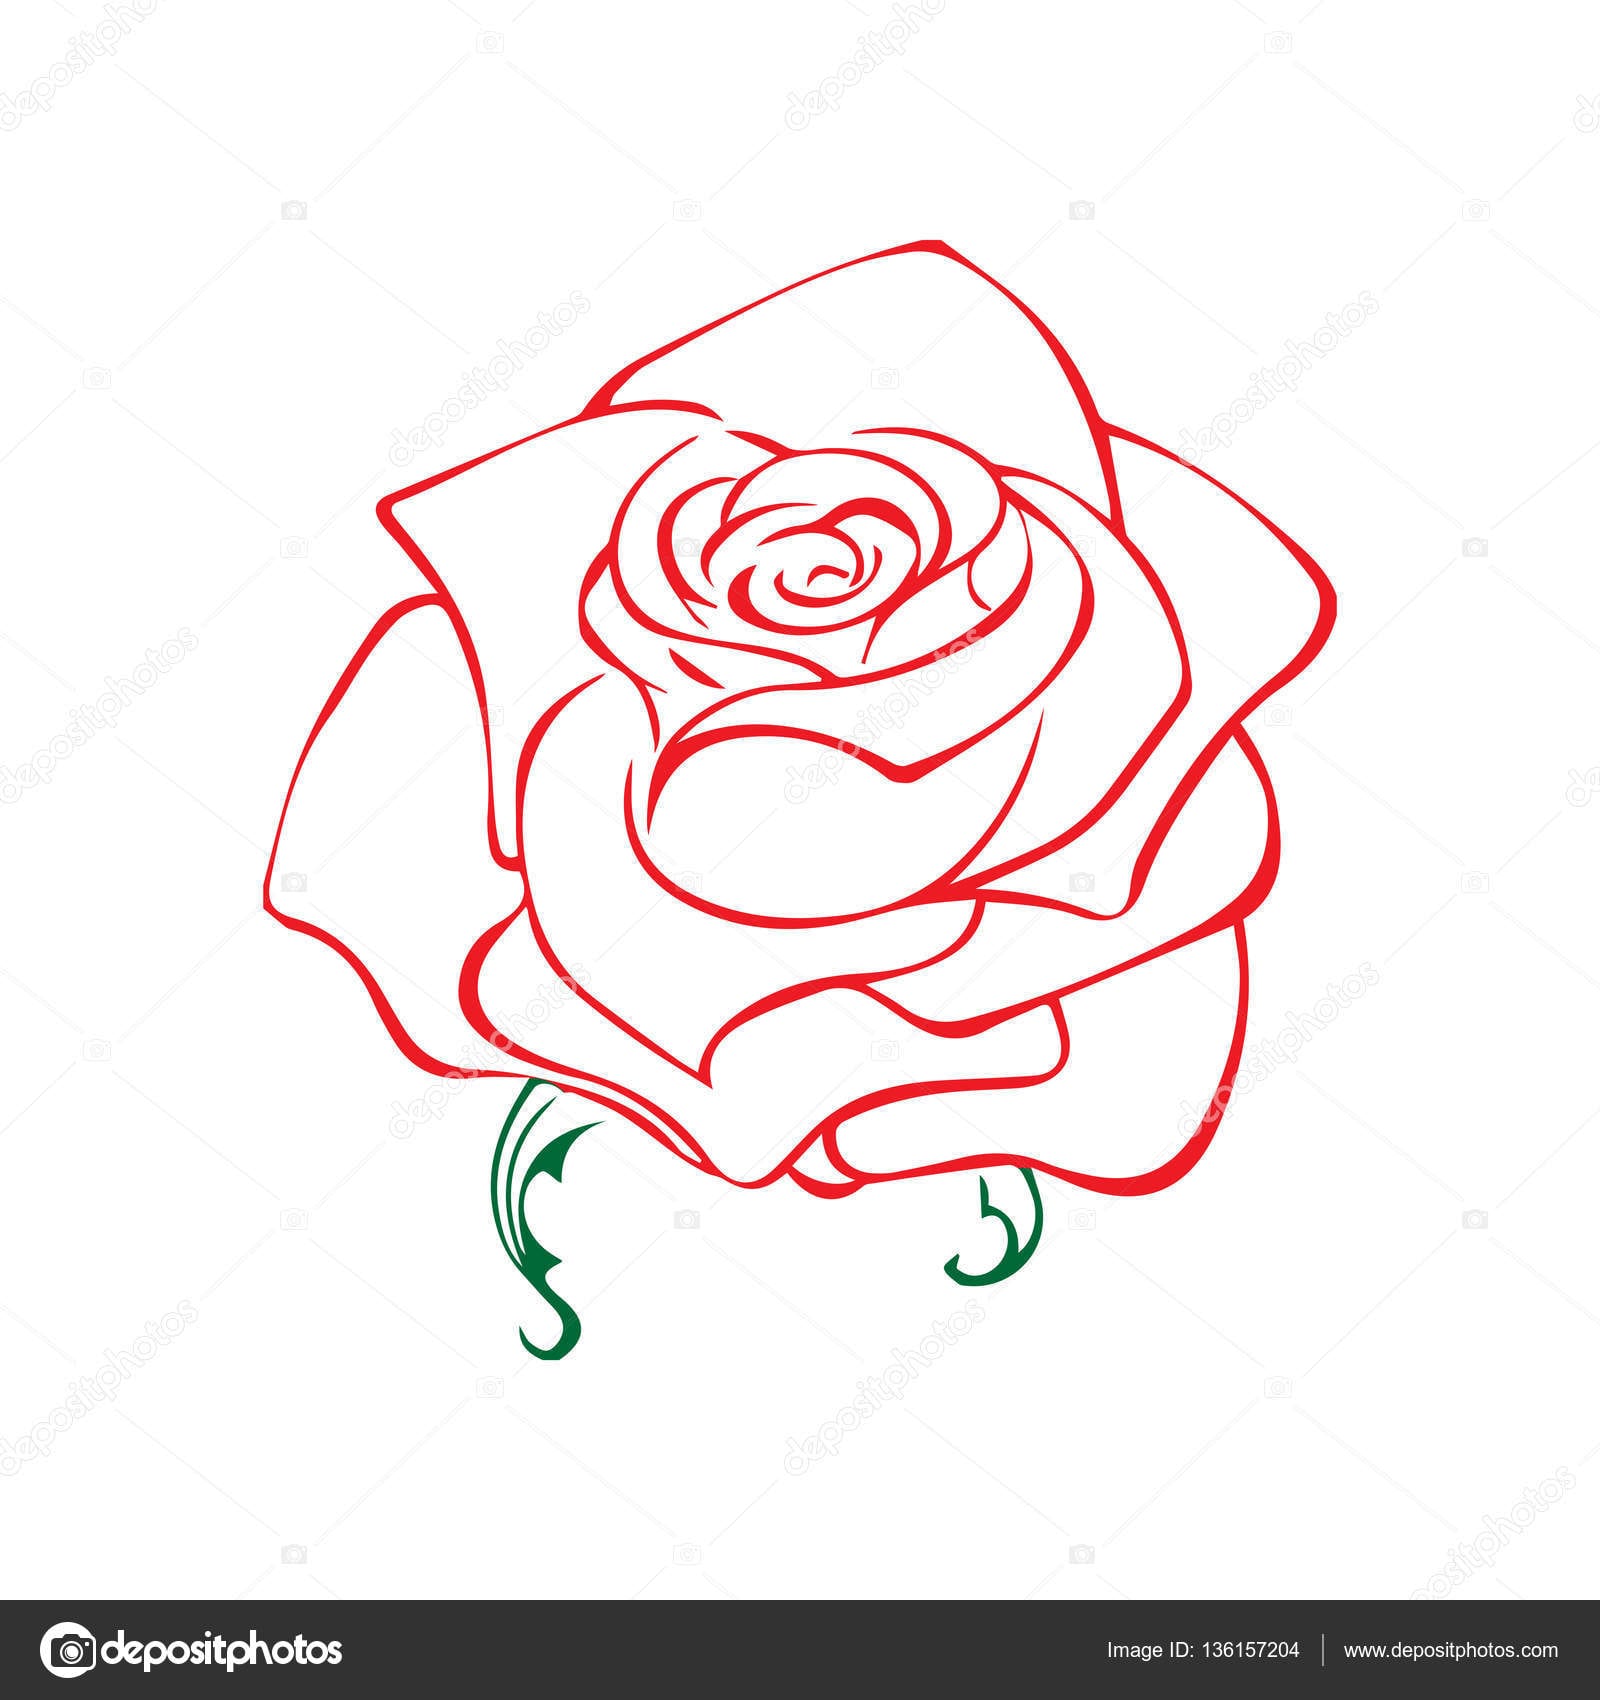 Desenho De Rosa  Elemento De Design De Flor  IlustraÃ§Ã£o Em Vetor